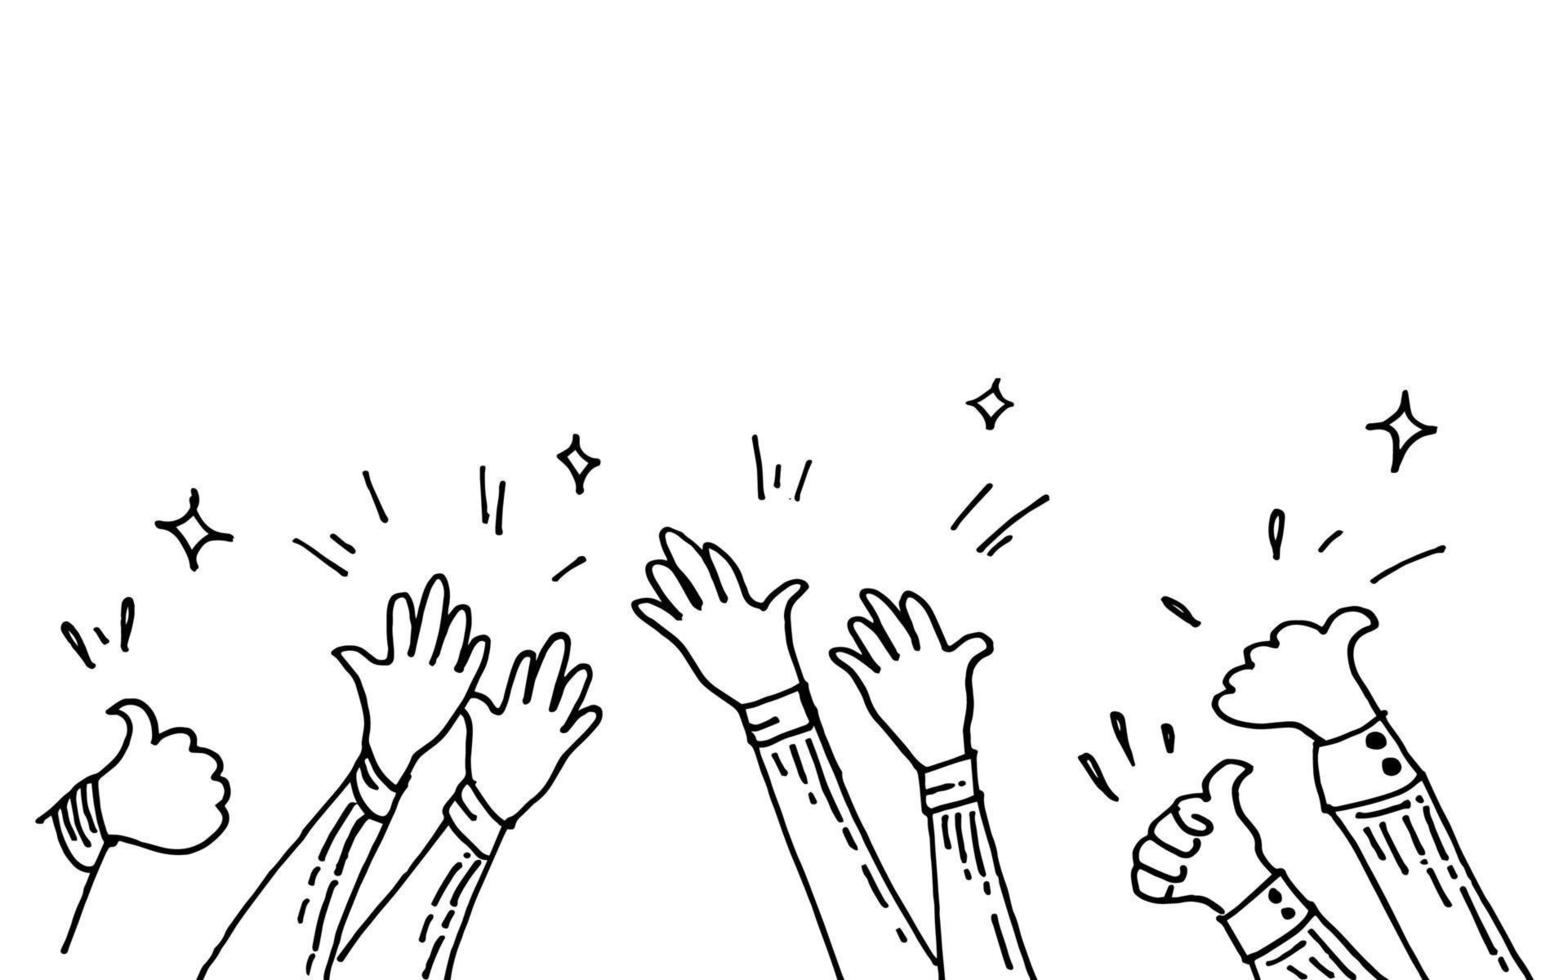 händerna klappar. händerna upp, applåder och tummen upp gester. händer människor för konceptdesign. doodle vektor illustration